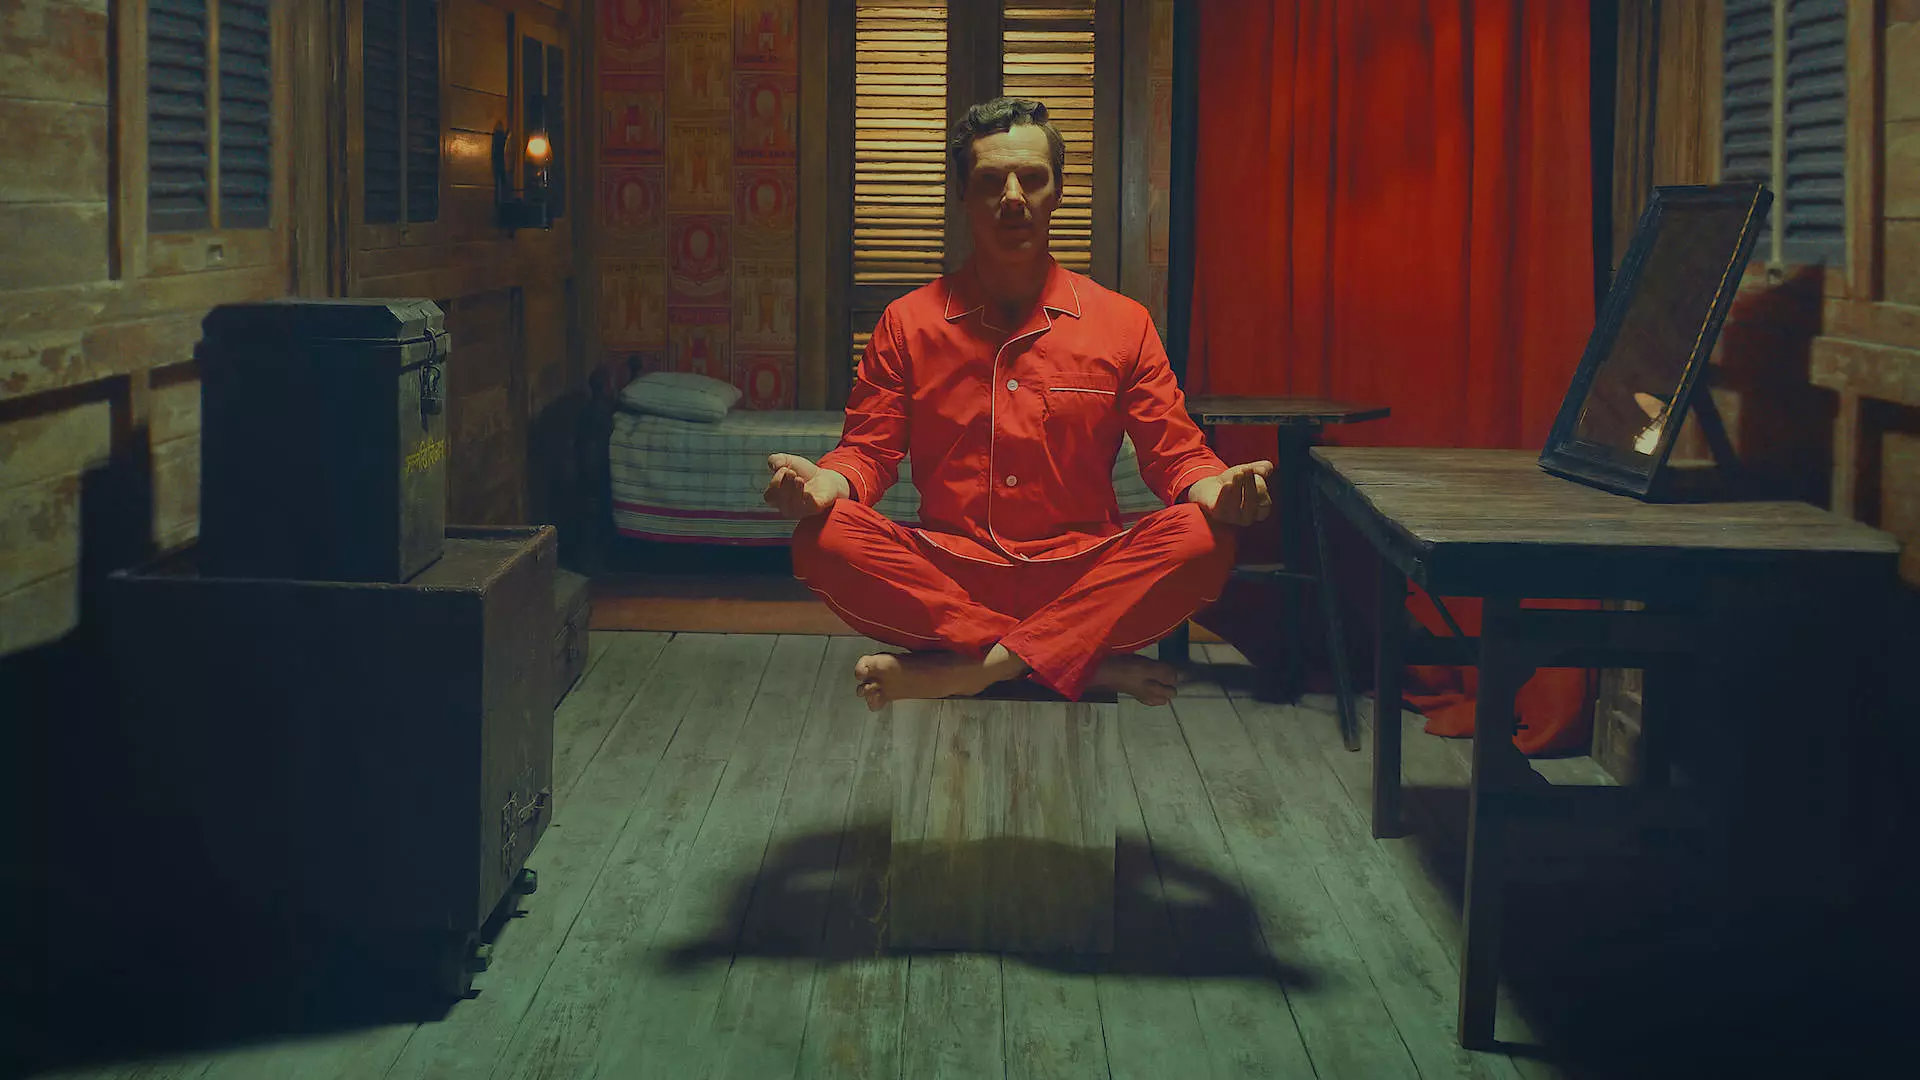 بندیکت کامبربچ با لباس خواب قرمز روی سکویی نشسته است جوری که انگار بین زمین و هوا معلق است و مدیتیشن می‌کند در نمایی از فیلم کوتاه داستان شگفت‌انگیز هنری شوگر به کارگردانی وس اندرسون